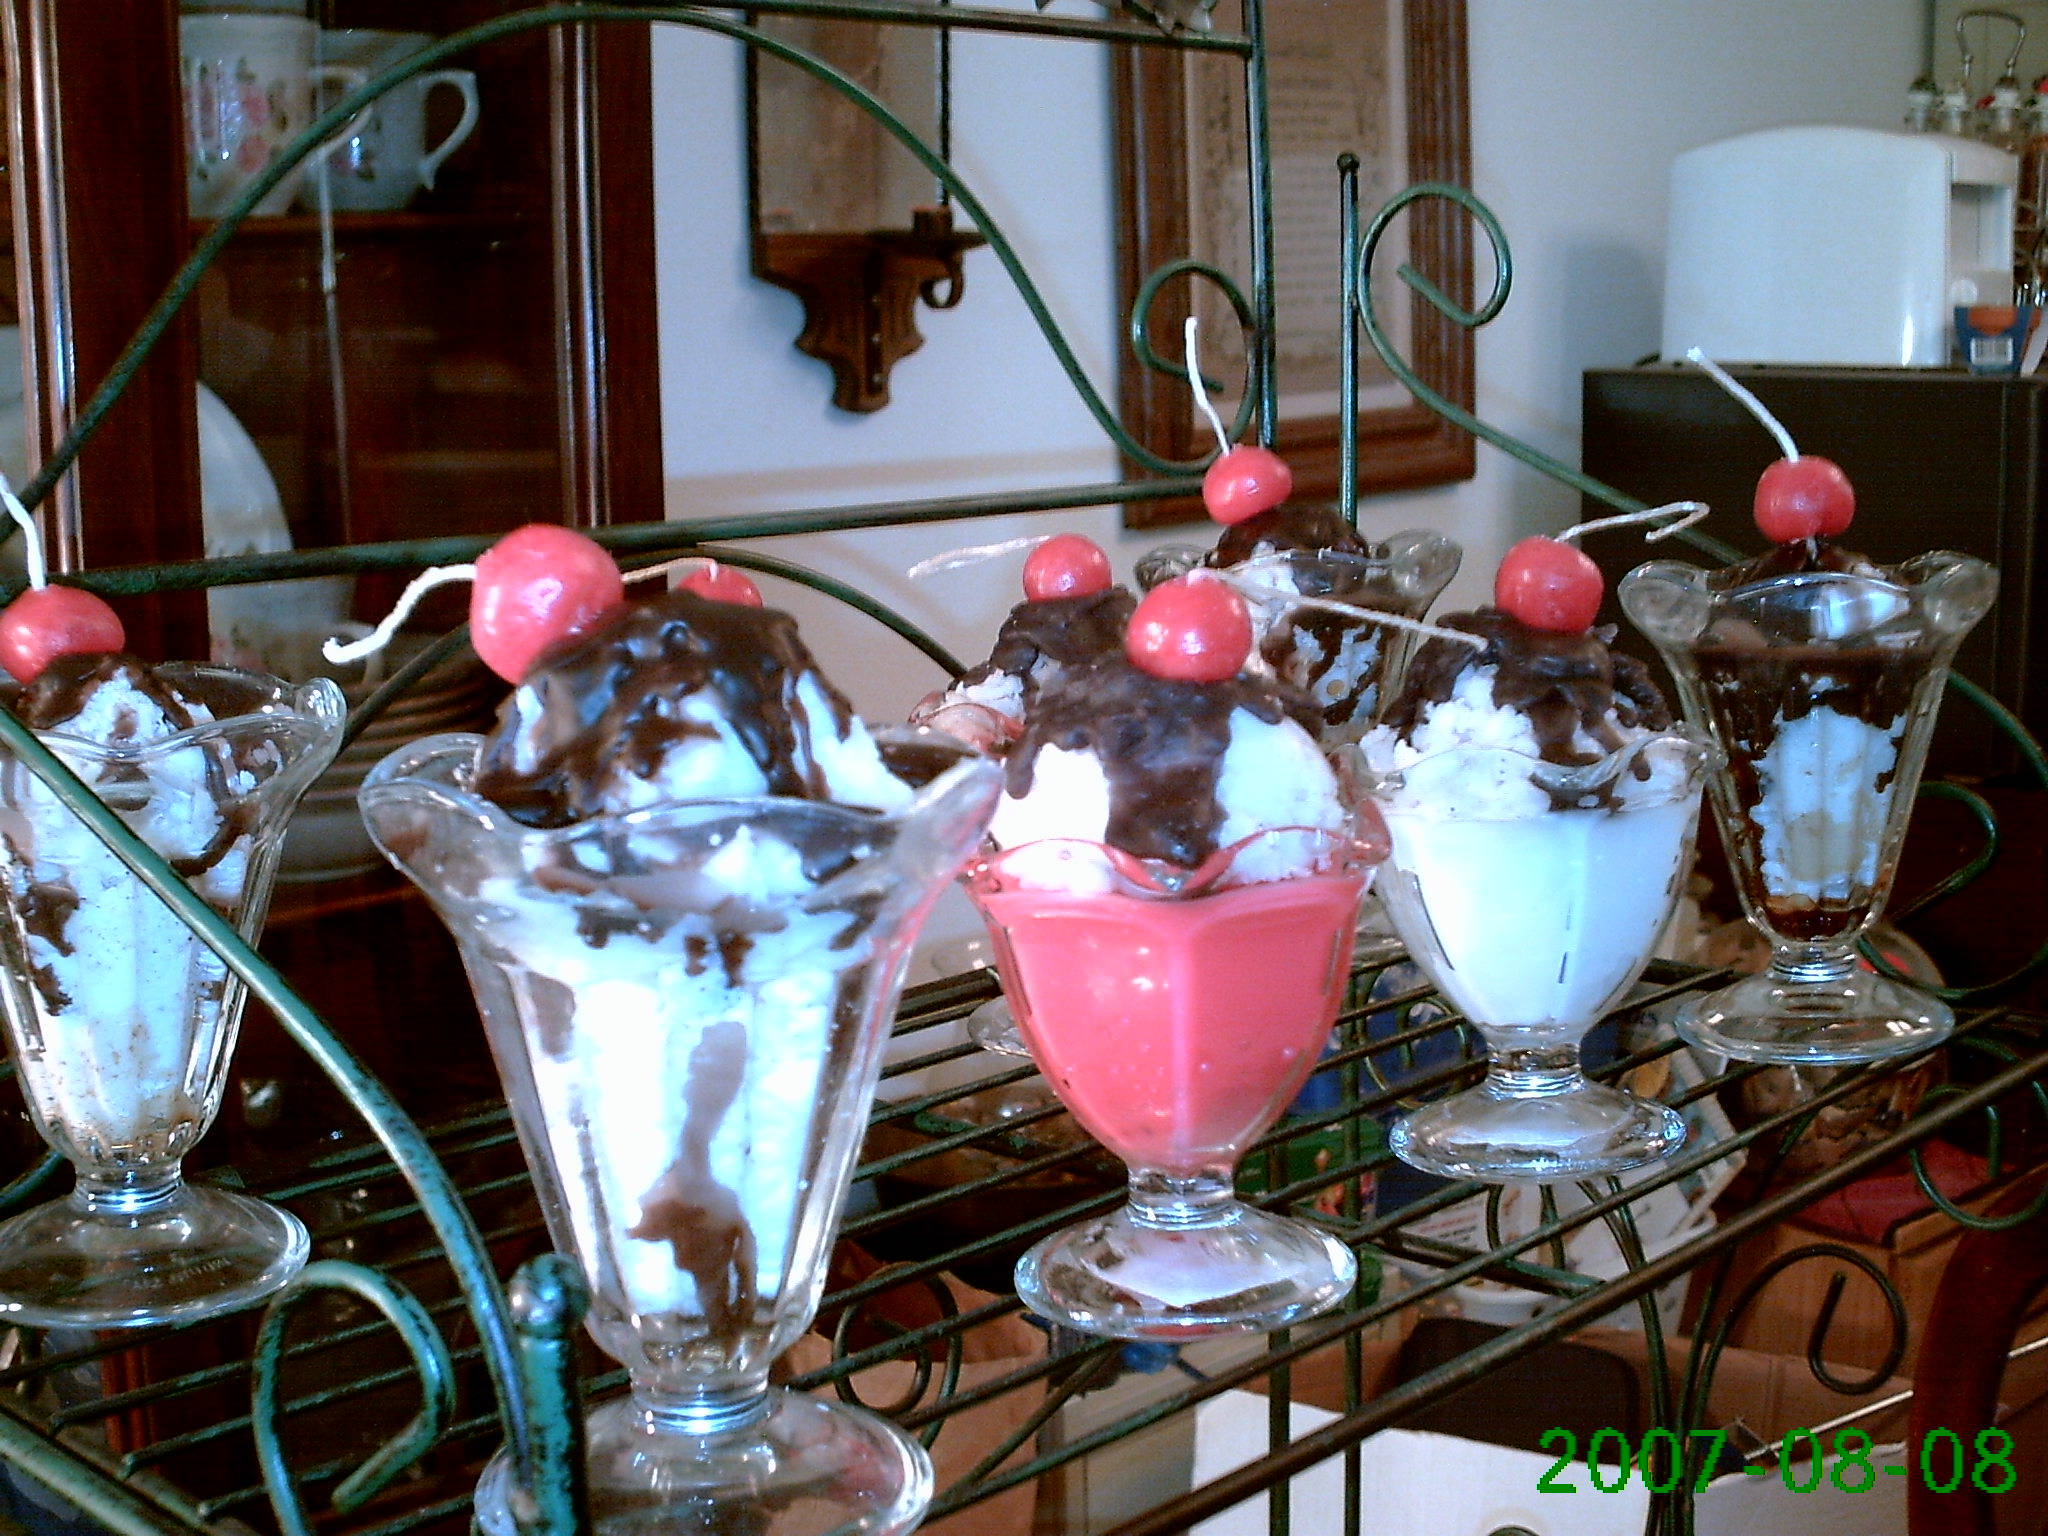 Ice Cream in tulip glass